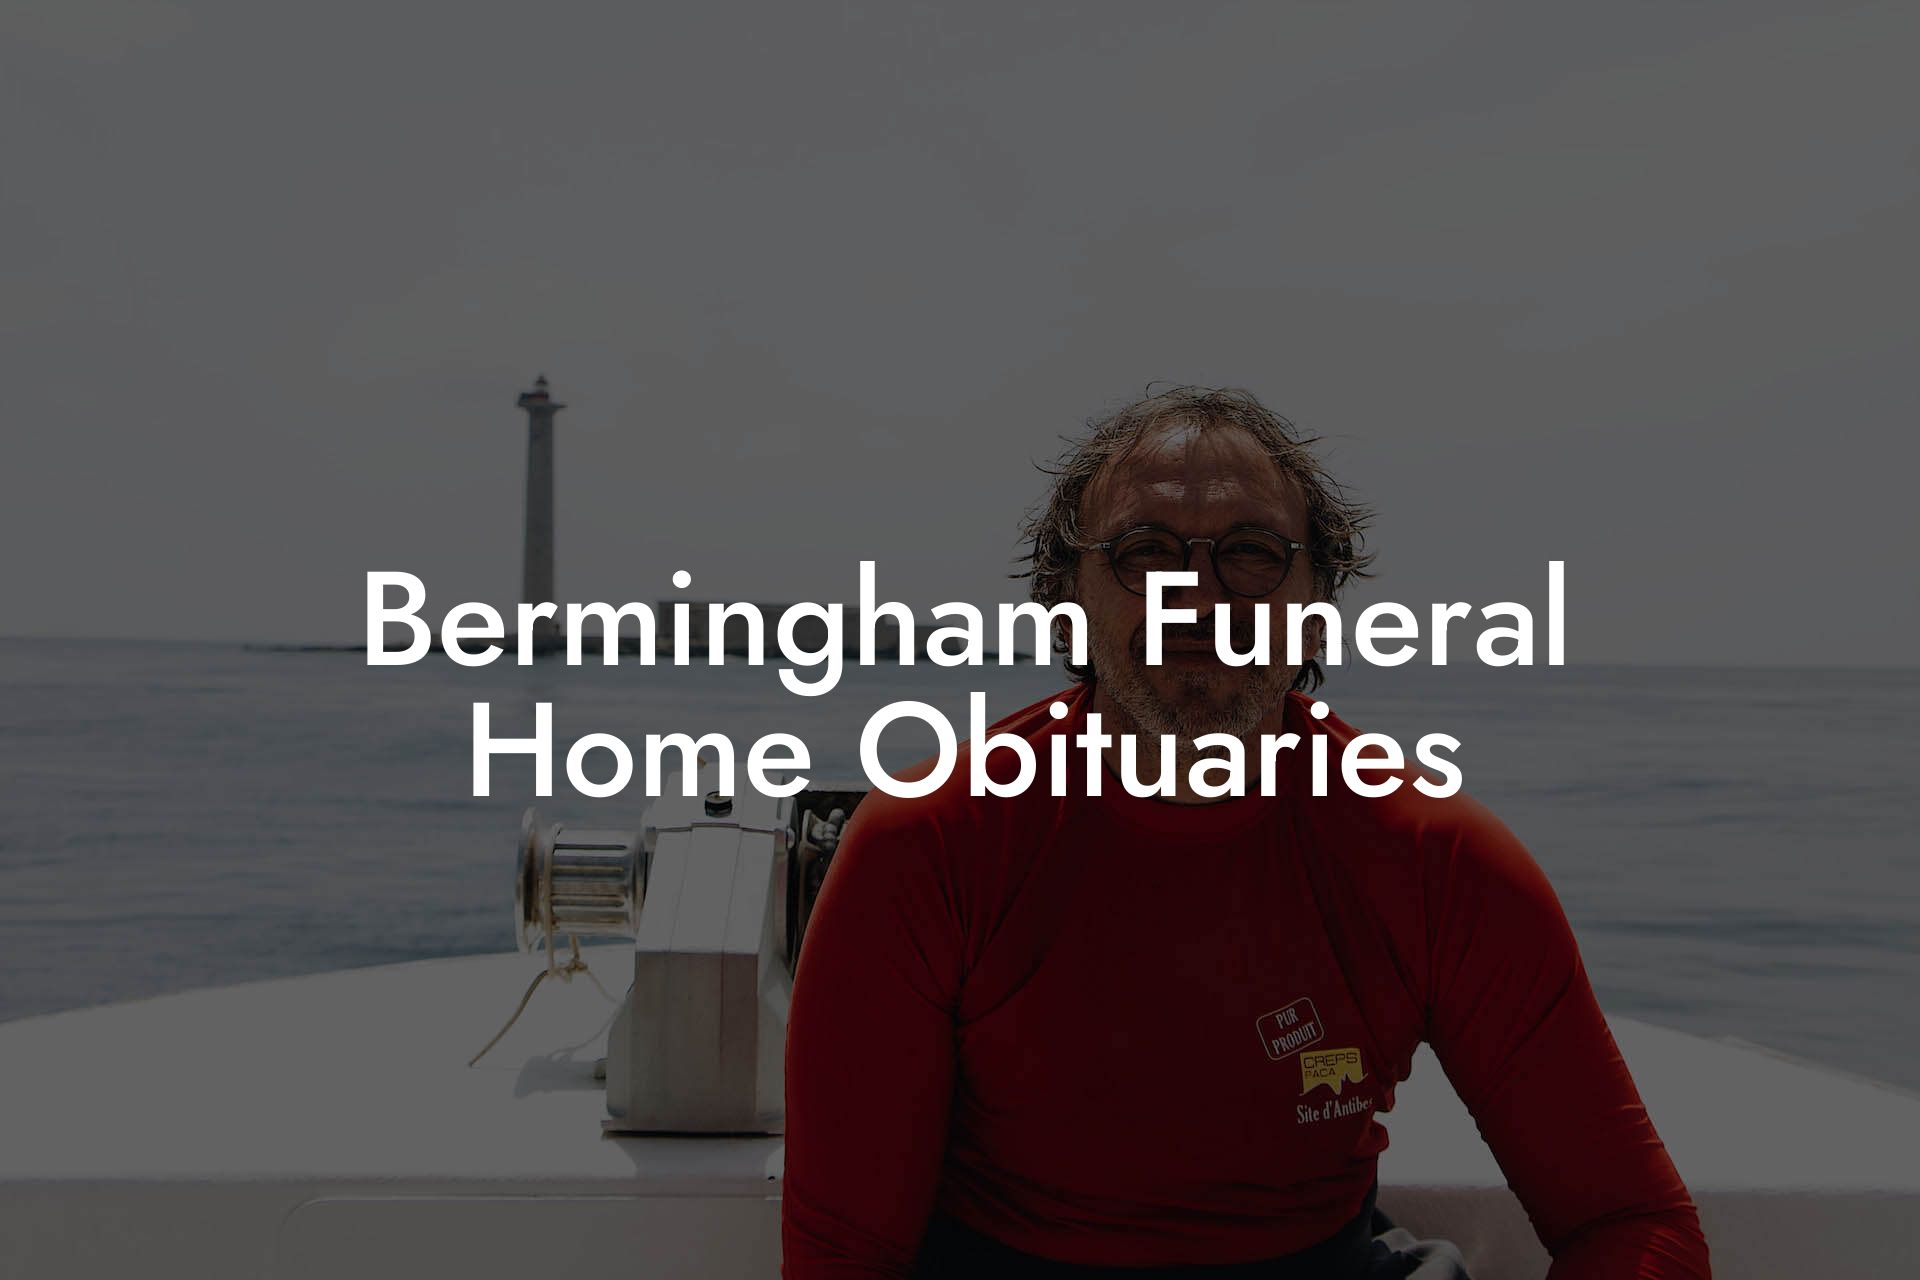 Bermingham Funeral Home Obituaries